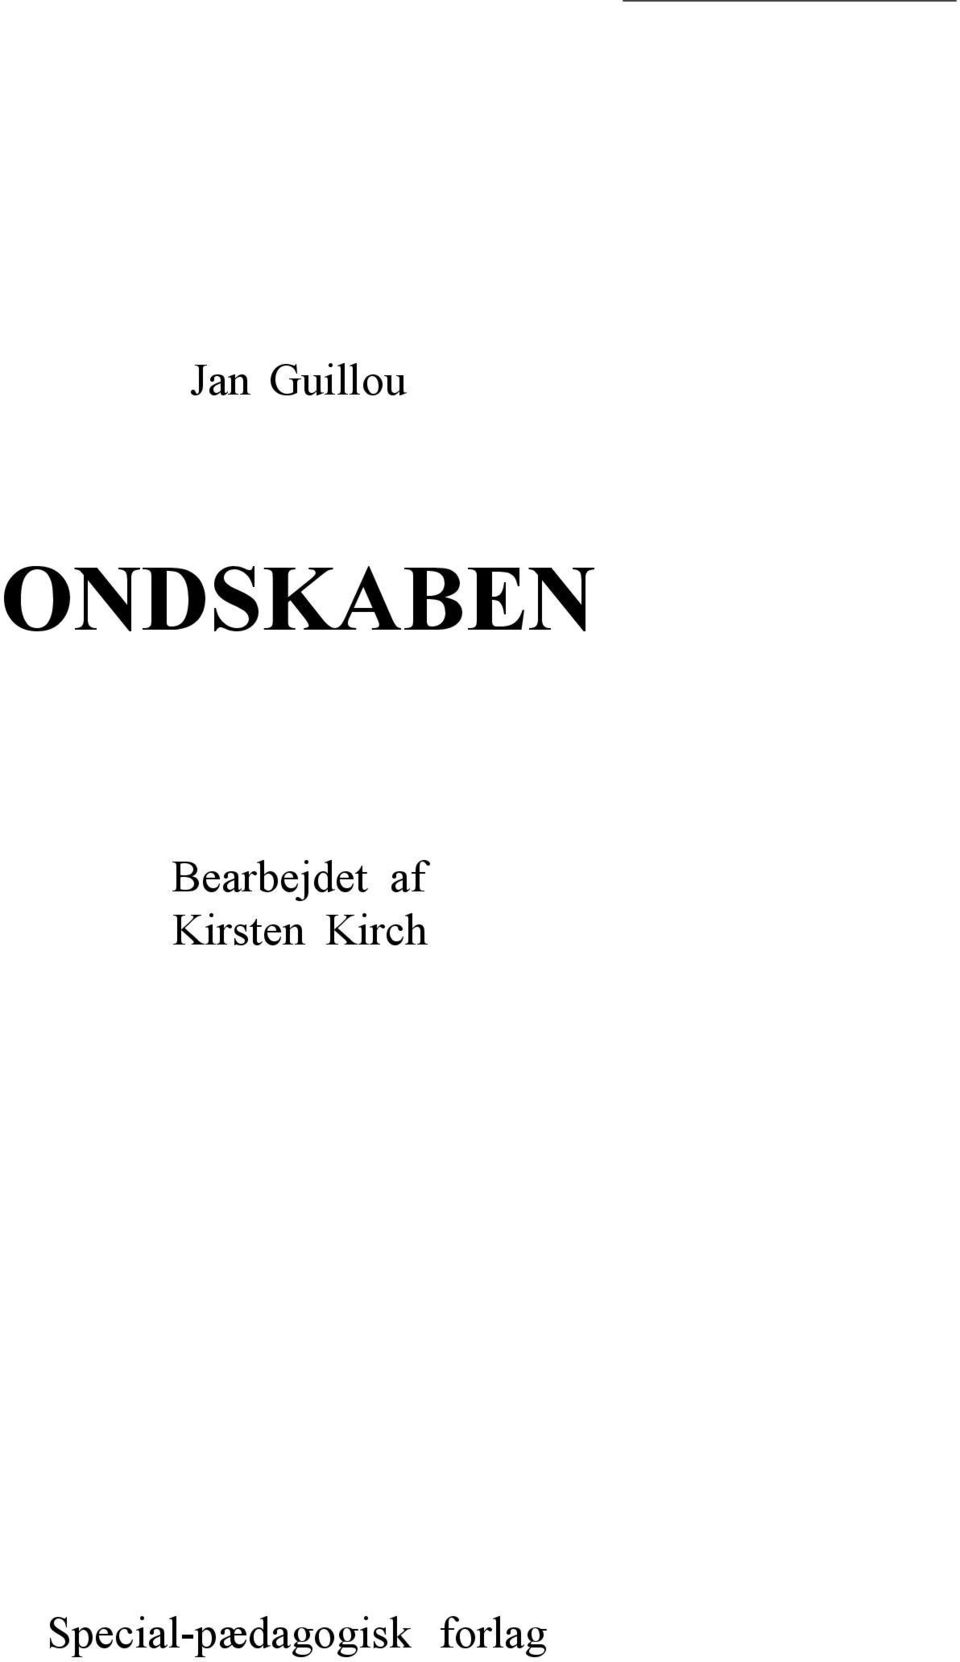 Jan Guillou ONDSKABEN. Bearbejdet af Kirsten Kirch - PDF Gratis ...